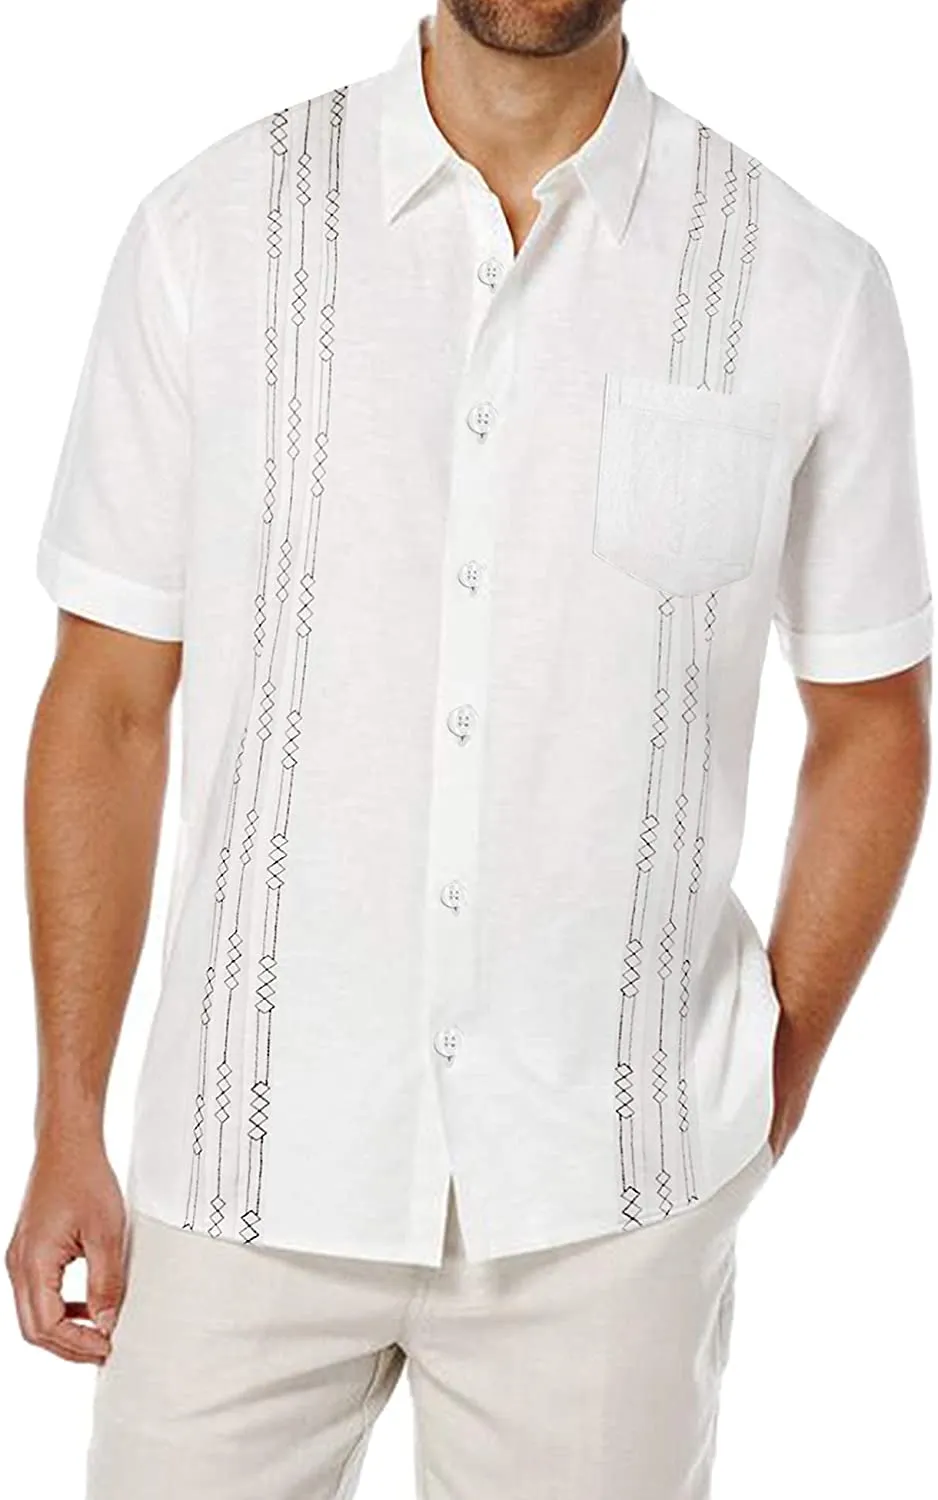 Camisa de linho de manga curta masculina Tops Cuban Tops Pocket Guayabera camisas